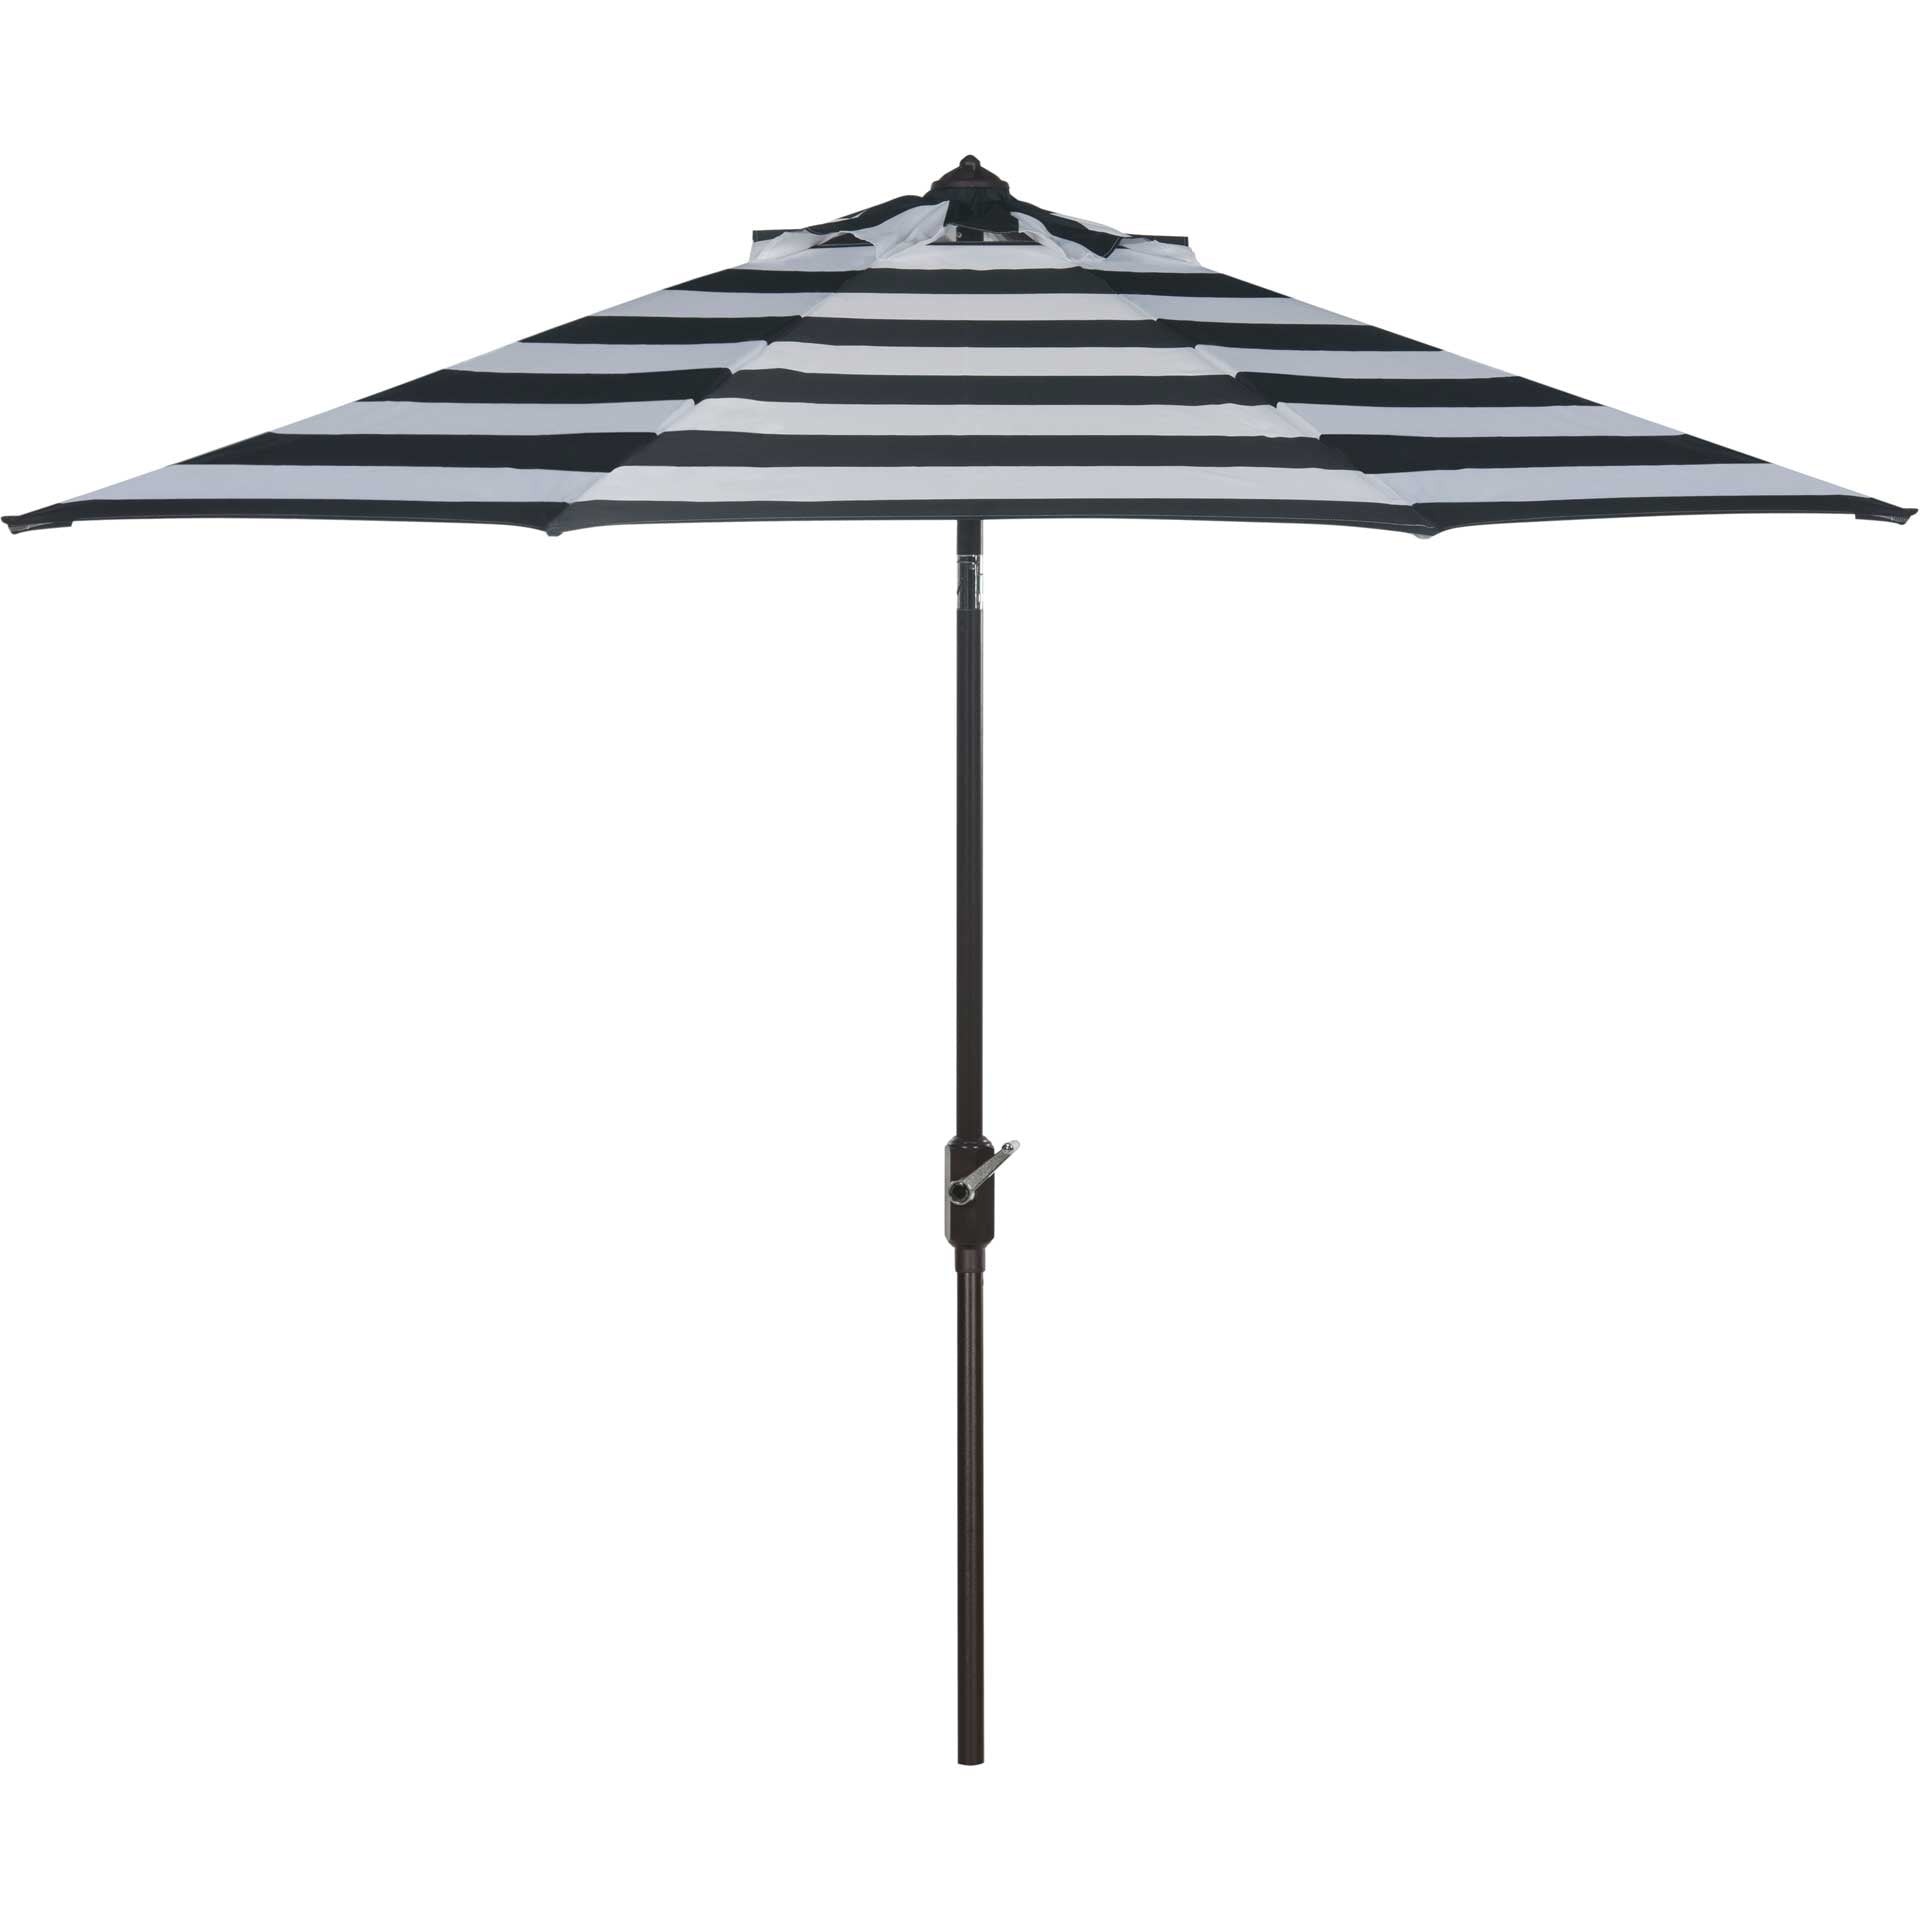 Irvin Uv Resistant Auto Tilt Umbrella Black/White